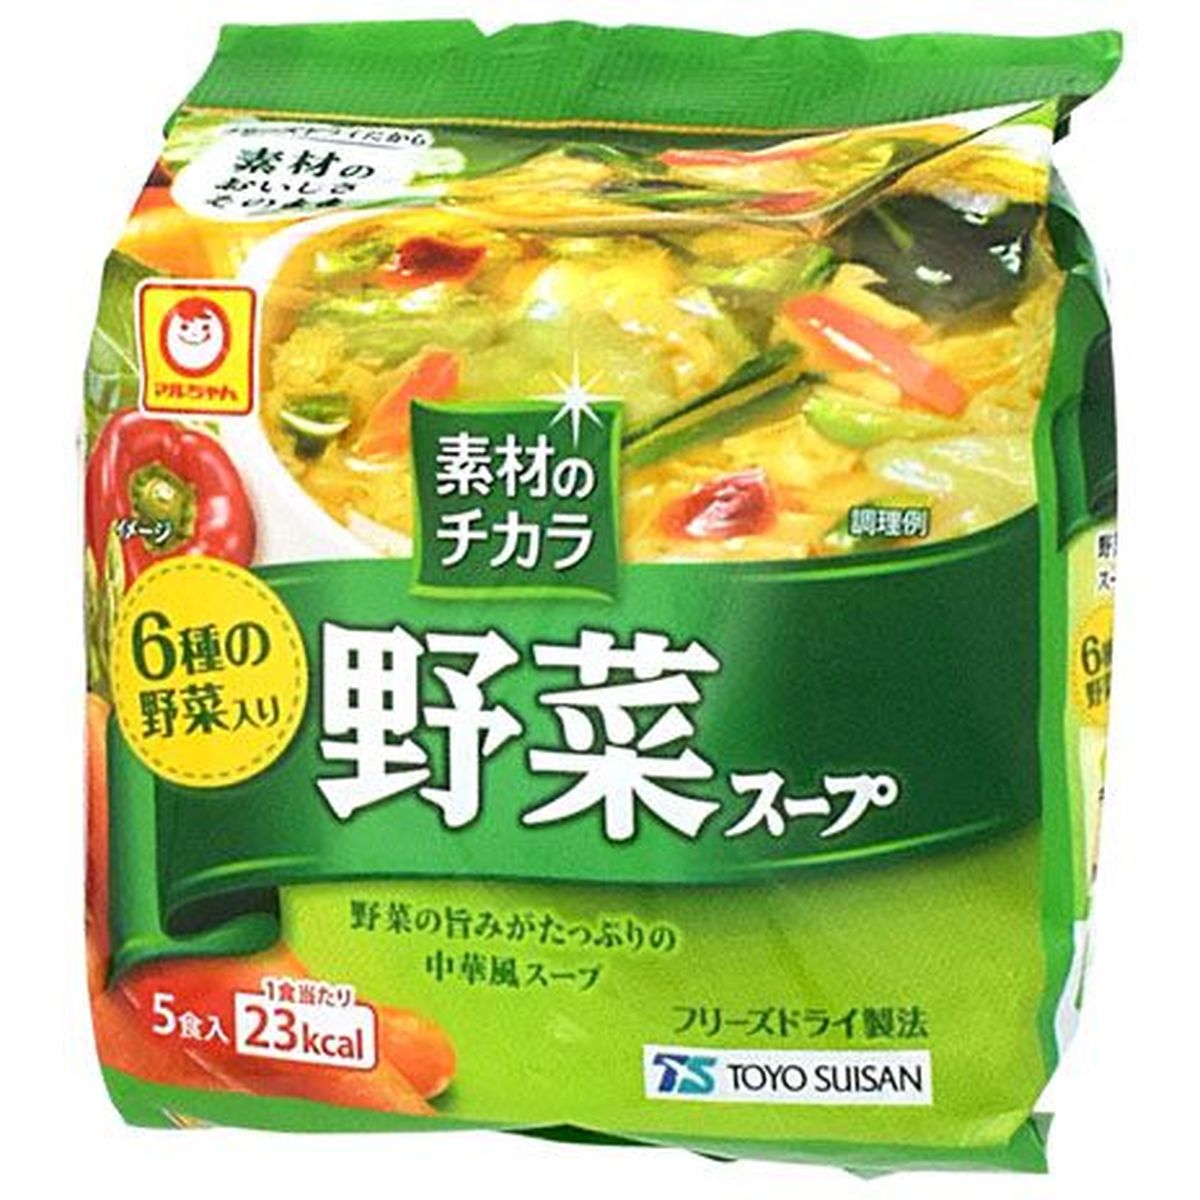 【6個入リ】マルチャン 素材ノチカラ野菜スープ 6g